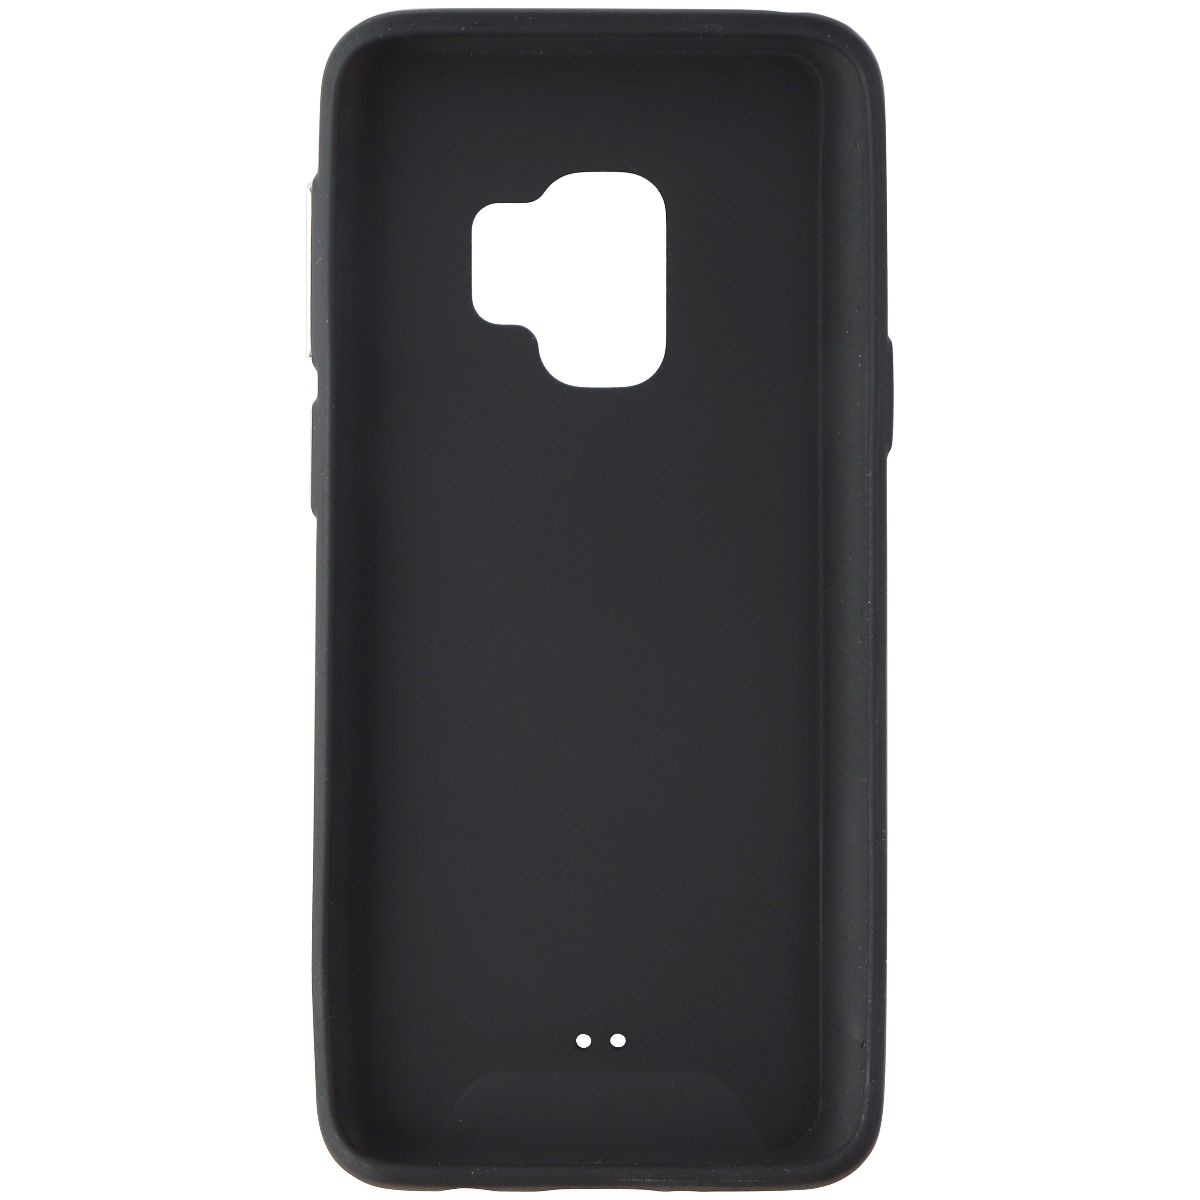 Nimbus9 Vapor Air 2 Case For Samsung Galaxy S9 - Black